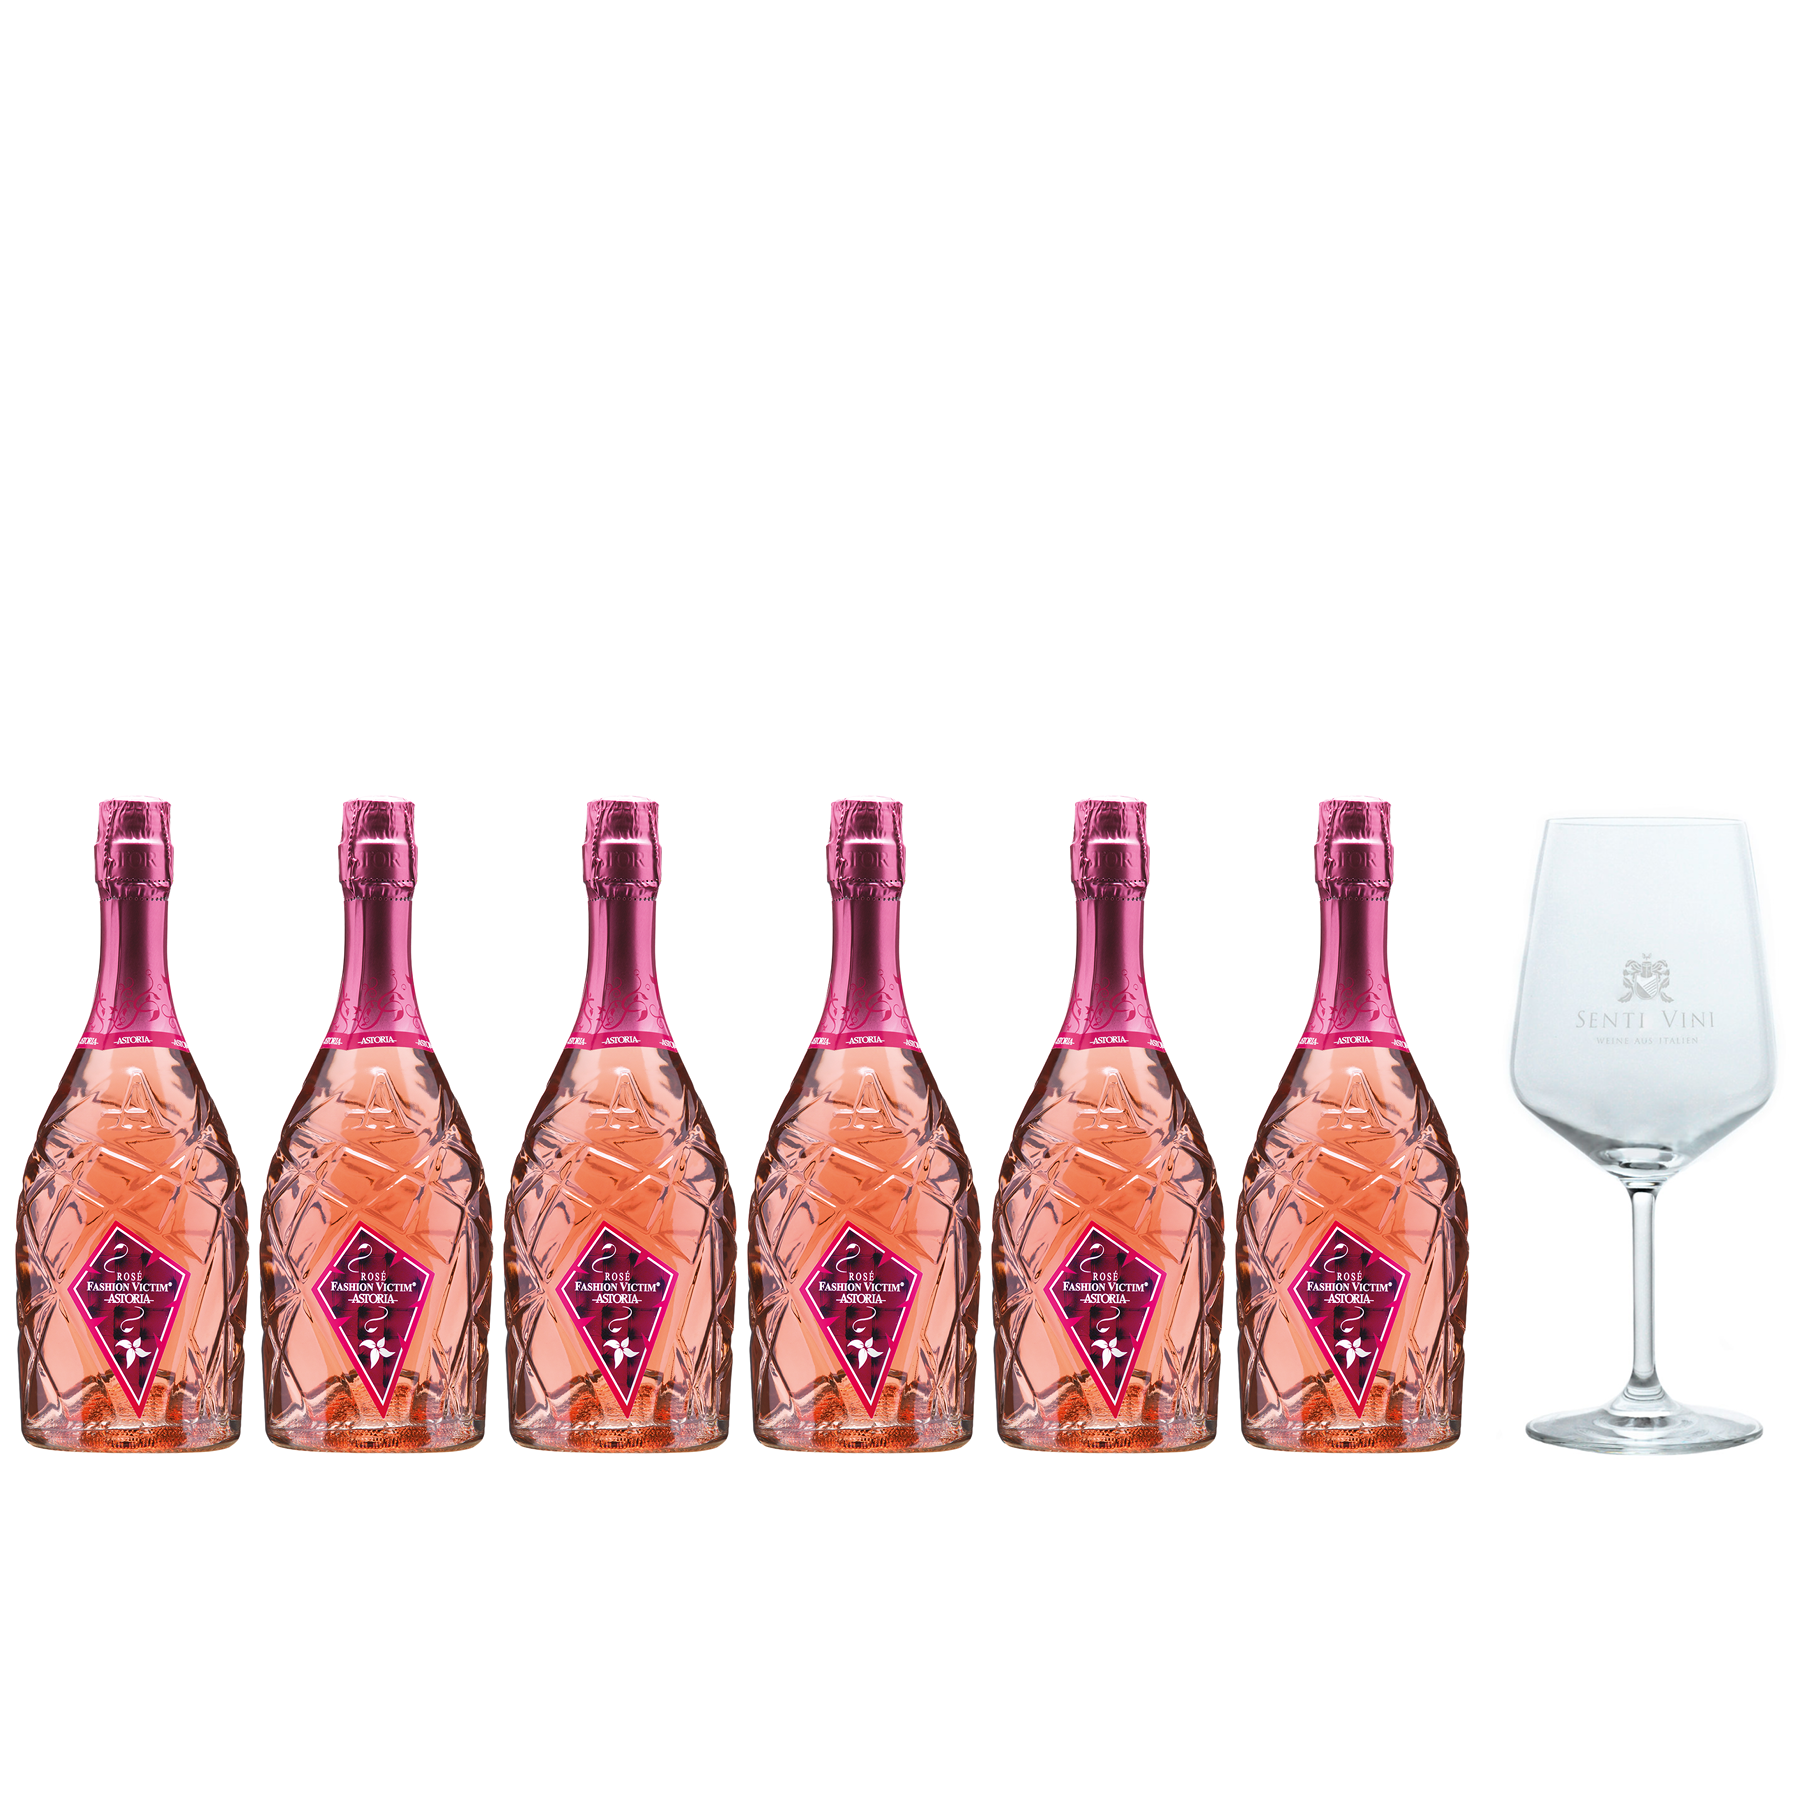 Sparpaket Astoria Fashion Victim Rosé Vino Spumante (6 x 0,75l) mit  Spiegelau Senti Vini Weinglas | Online kaufen bei Senti Vini - Weine aus  Italien